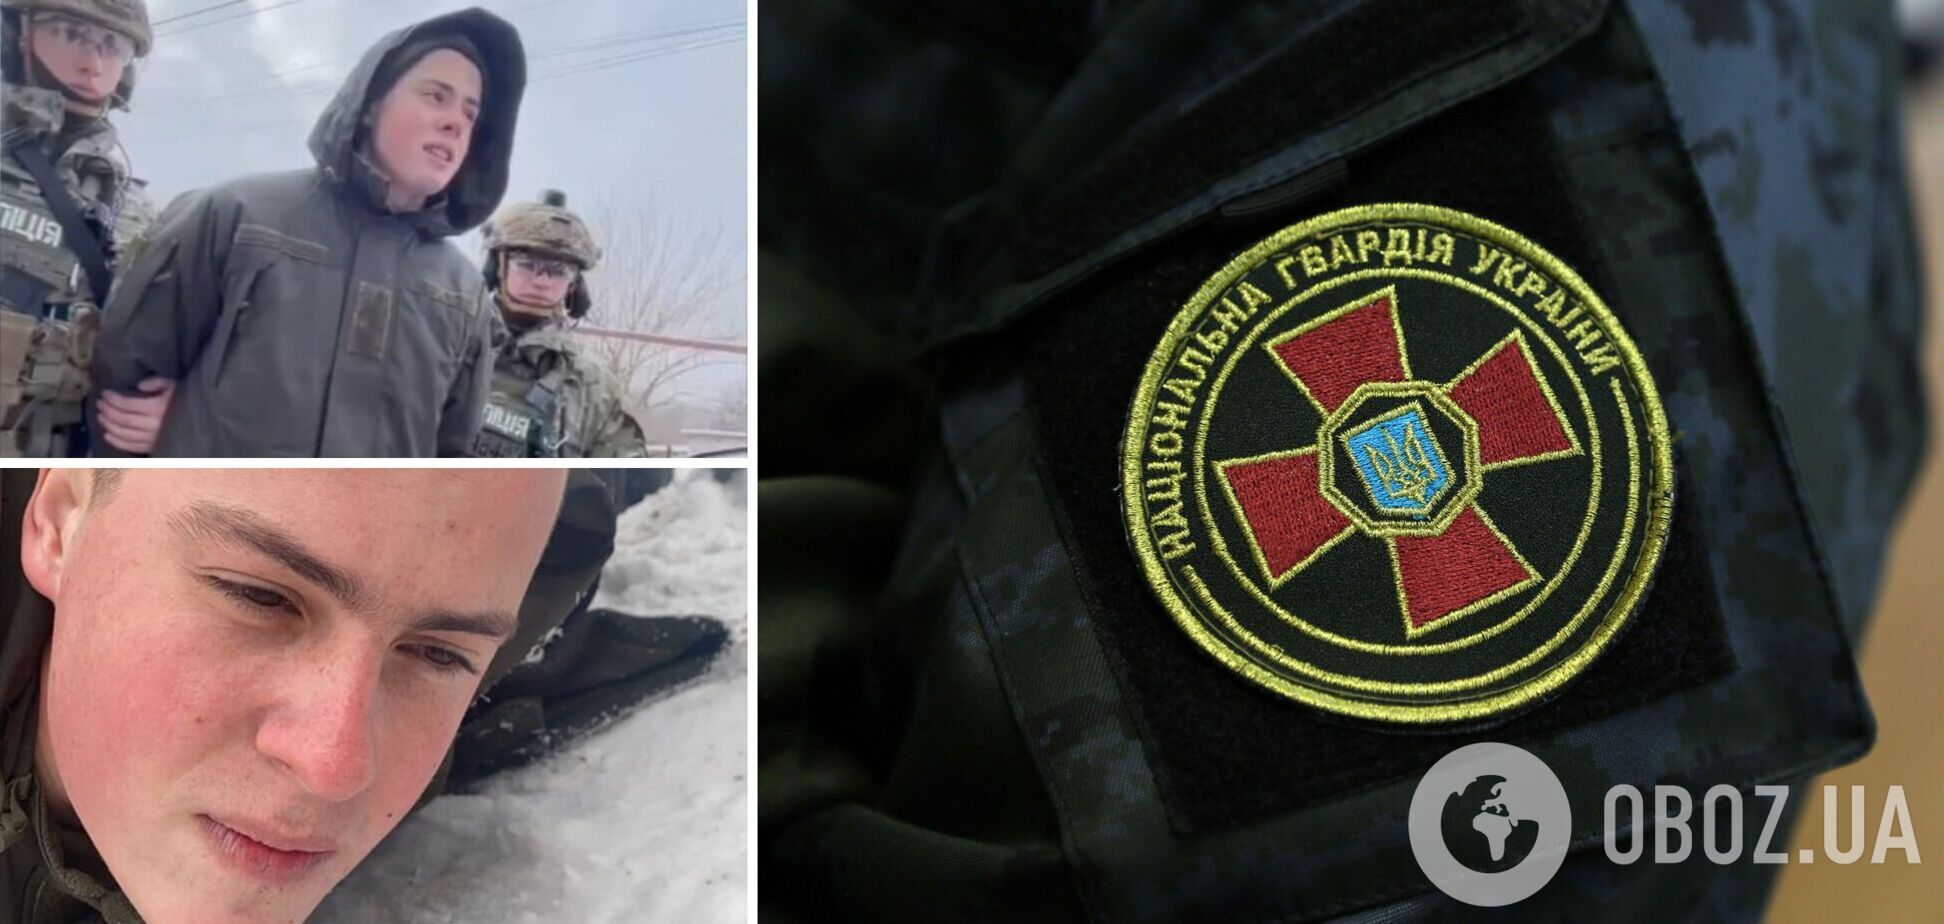 Расжигали ненависть между сослуживцами: военный сообщил факты 'дедовщины' в части, где Рябчук устроил расстрел